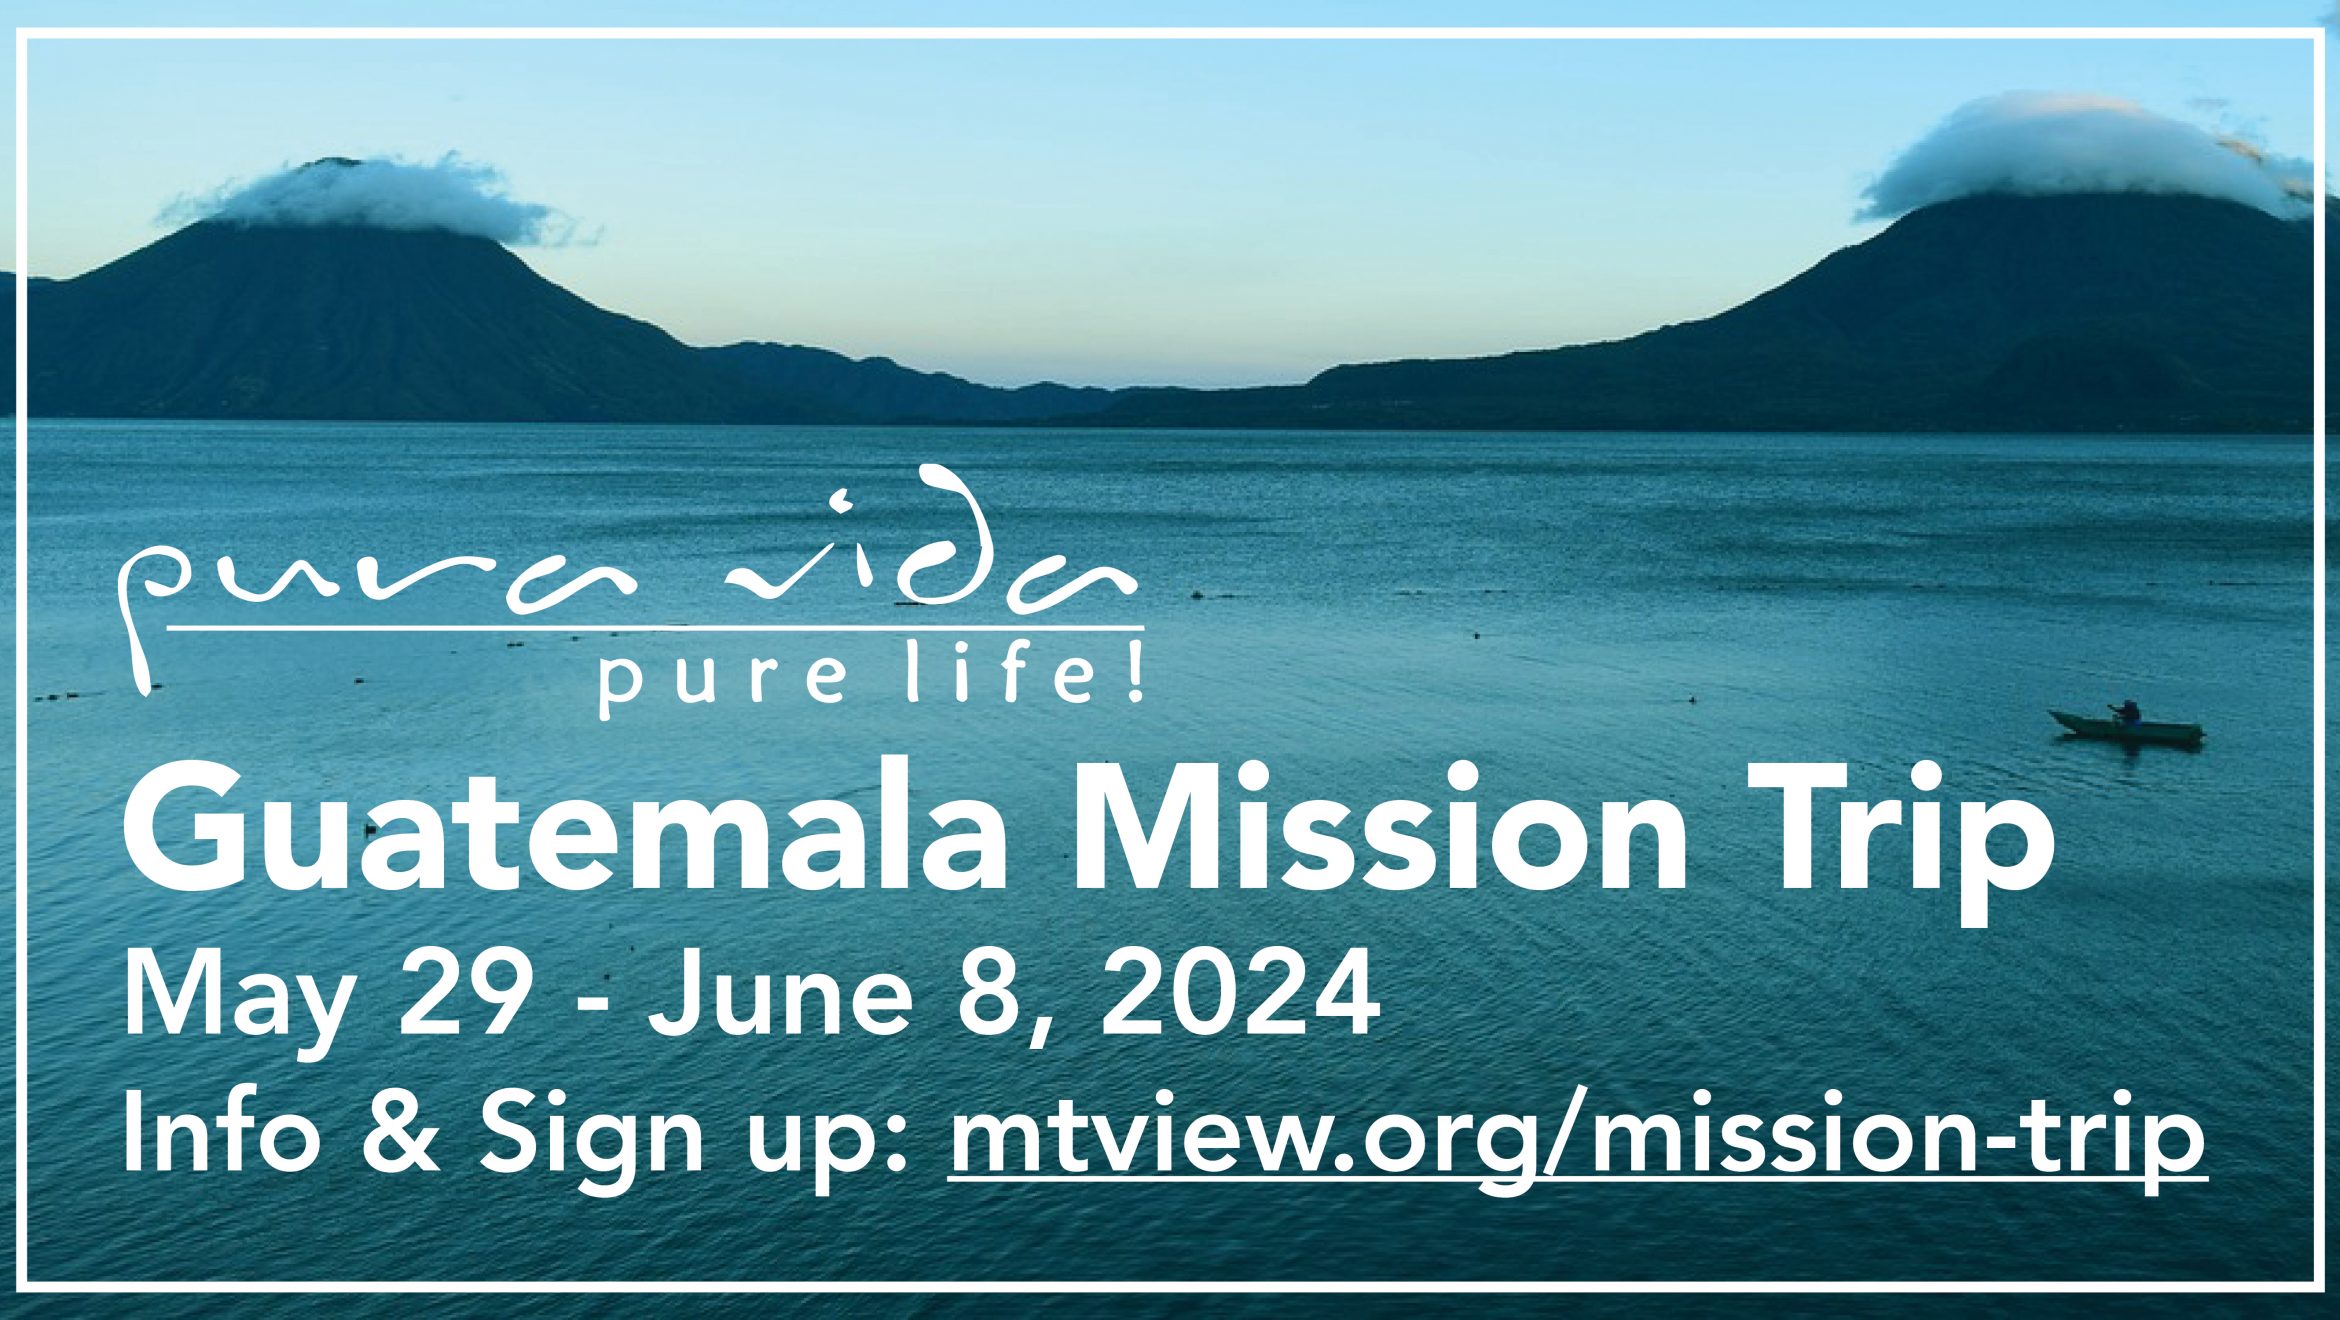 Mountain View UMC Mission Trip to Guatemala